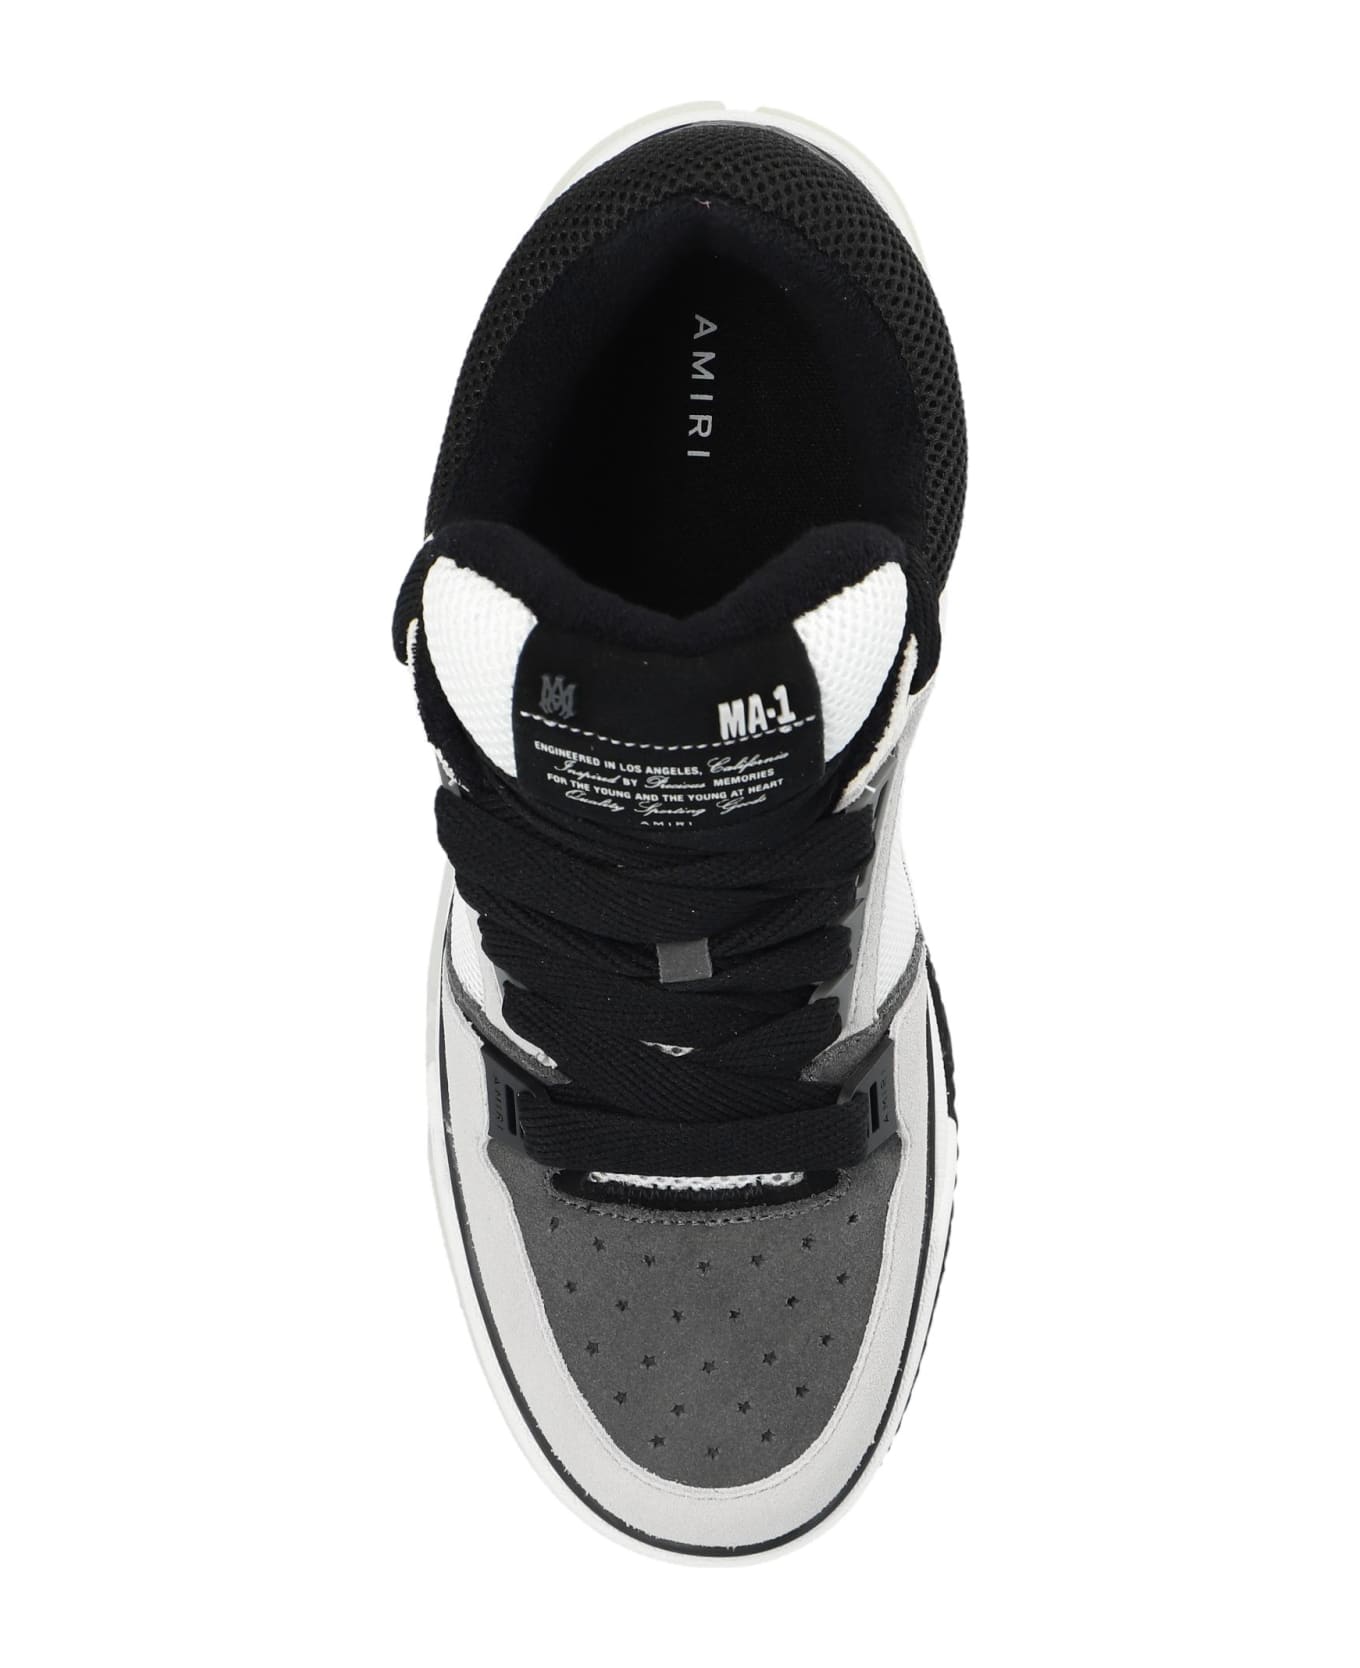 AMIRI 'ma-1' Sneakers - Black